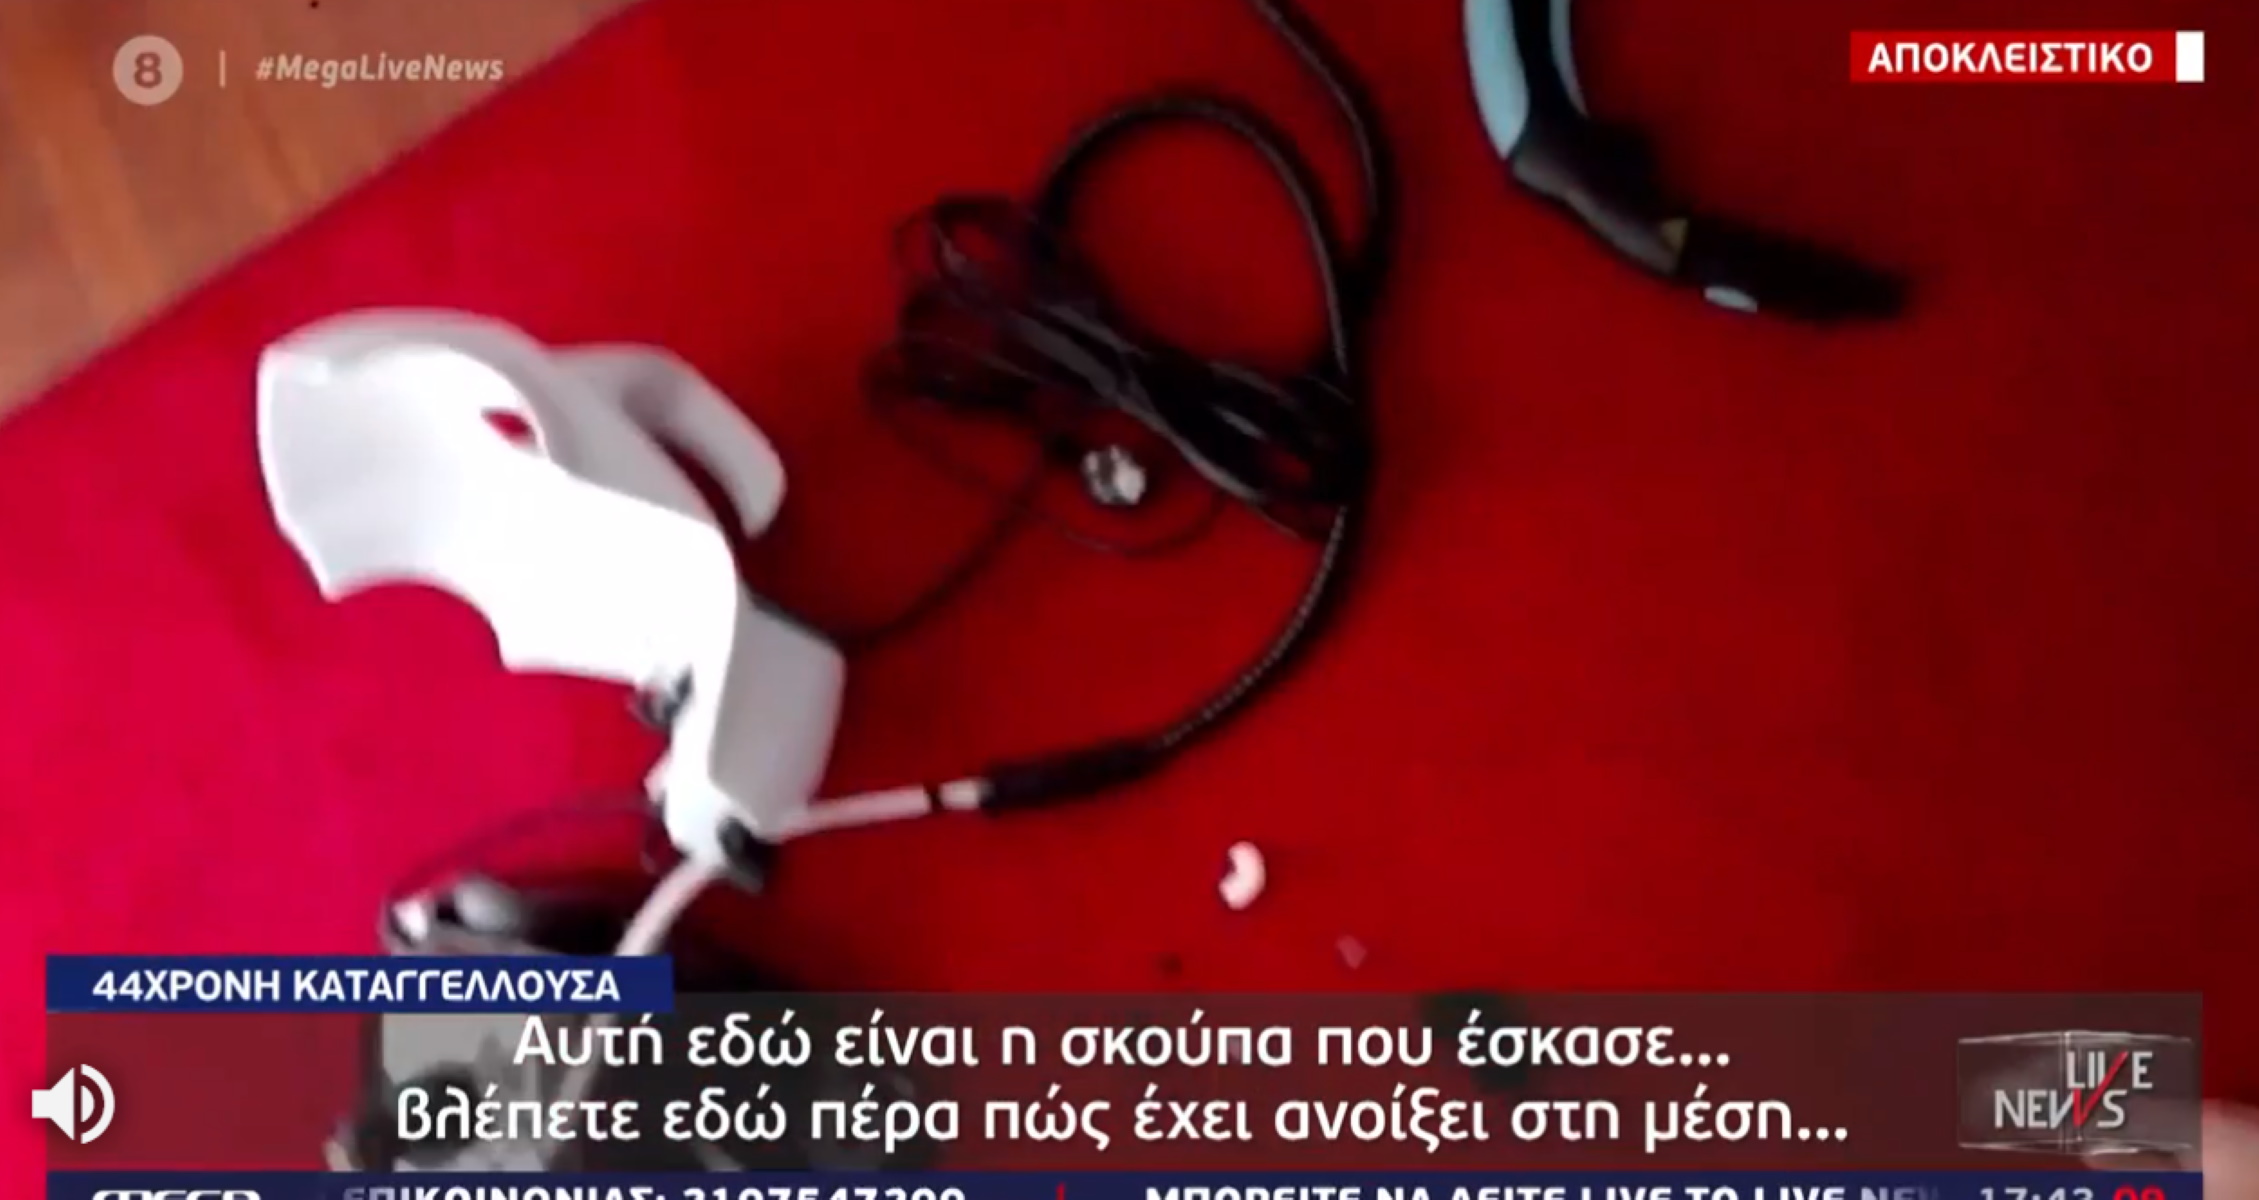 Tρόμος στο σπίτι για 44χρονη μητέρα -Εξερράγη η ηλεκτρική σκούπα – Αποκλειστικές εικόνες του “Live News”